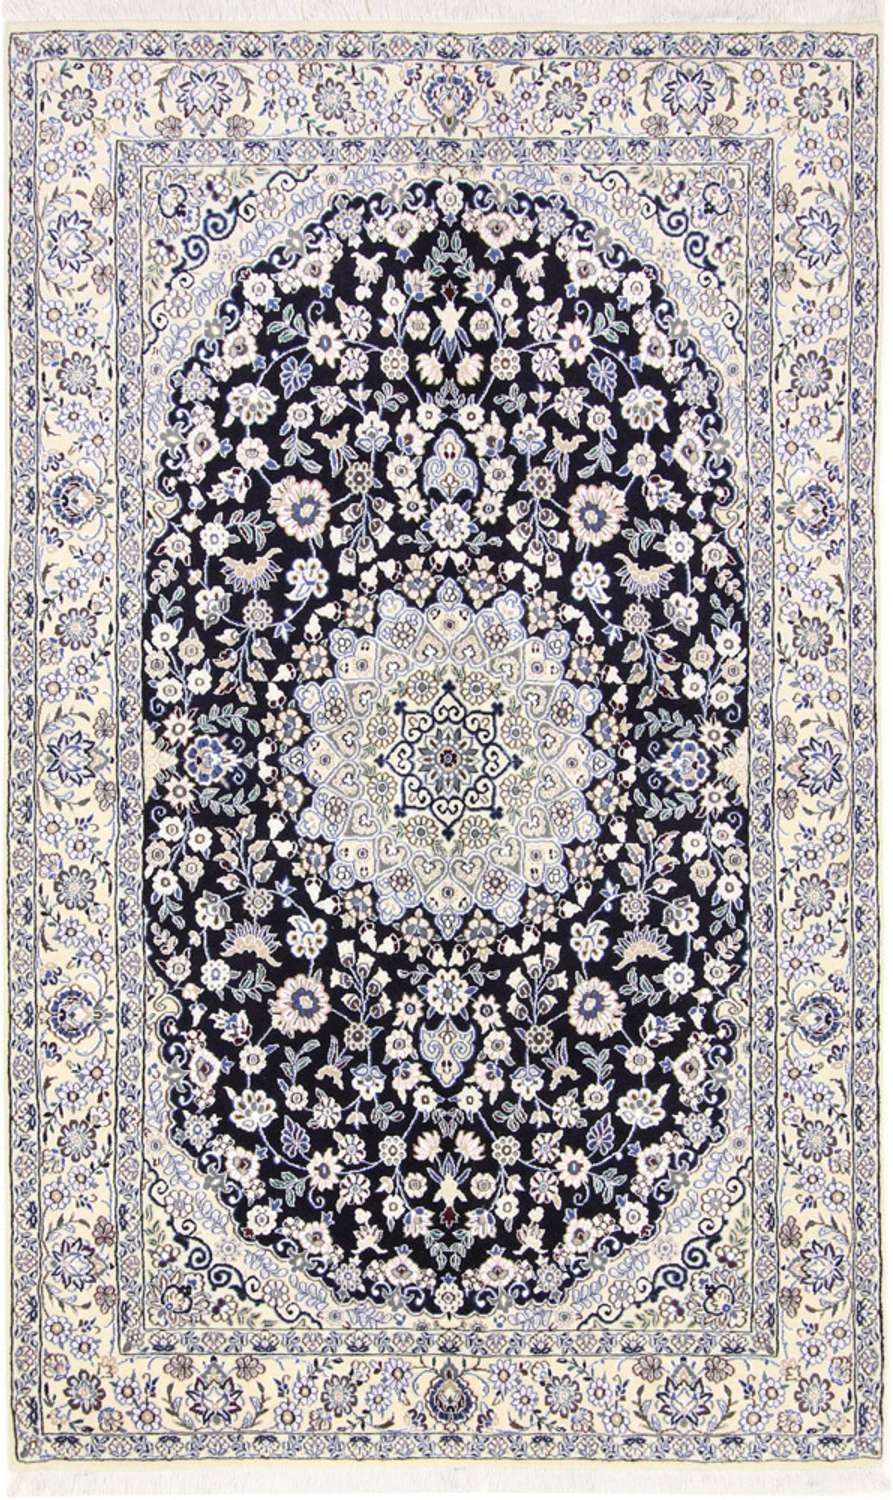 Tapis persan - Nain - Royal - 202 x 130 cm - bleu foncé